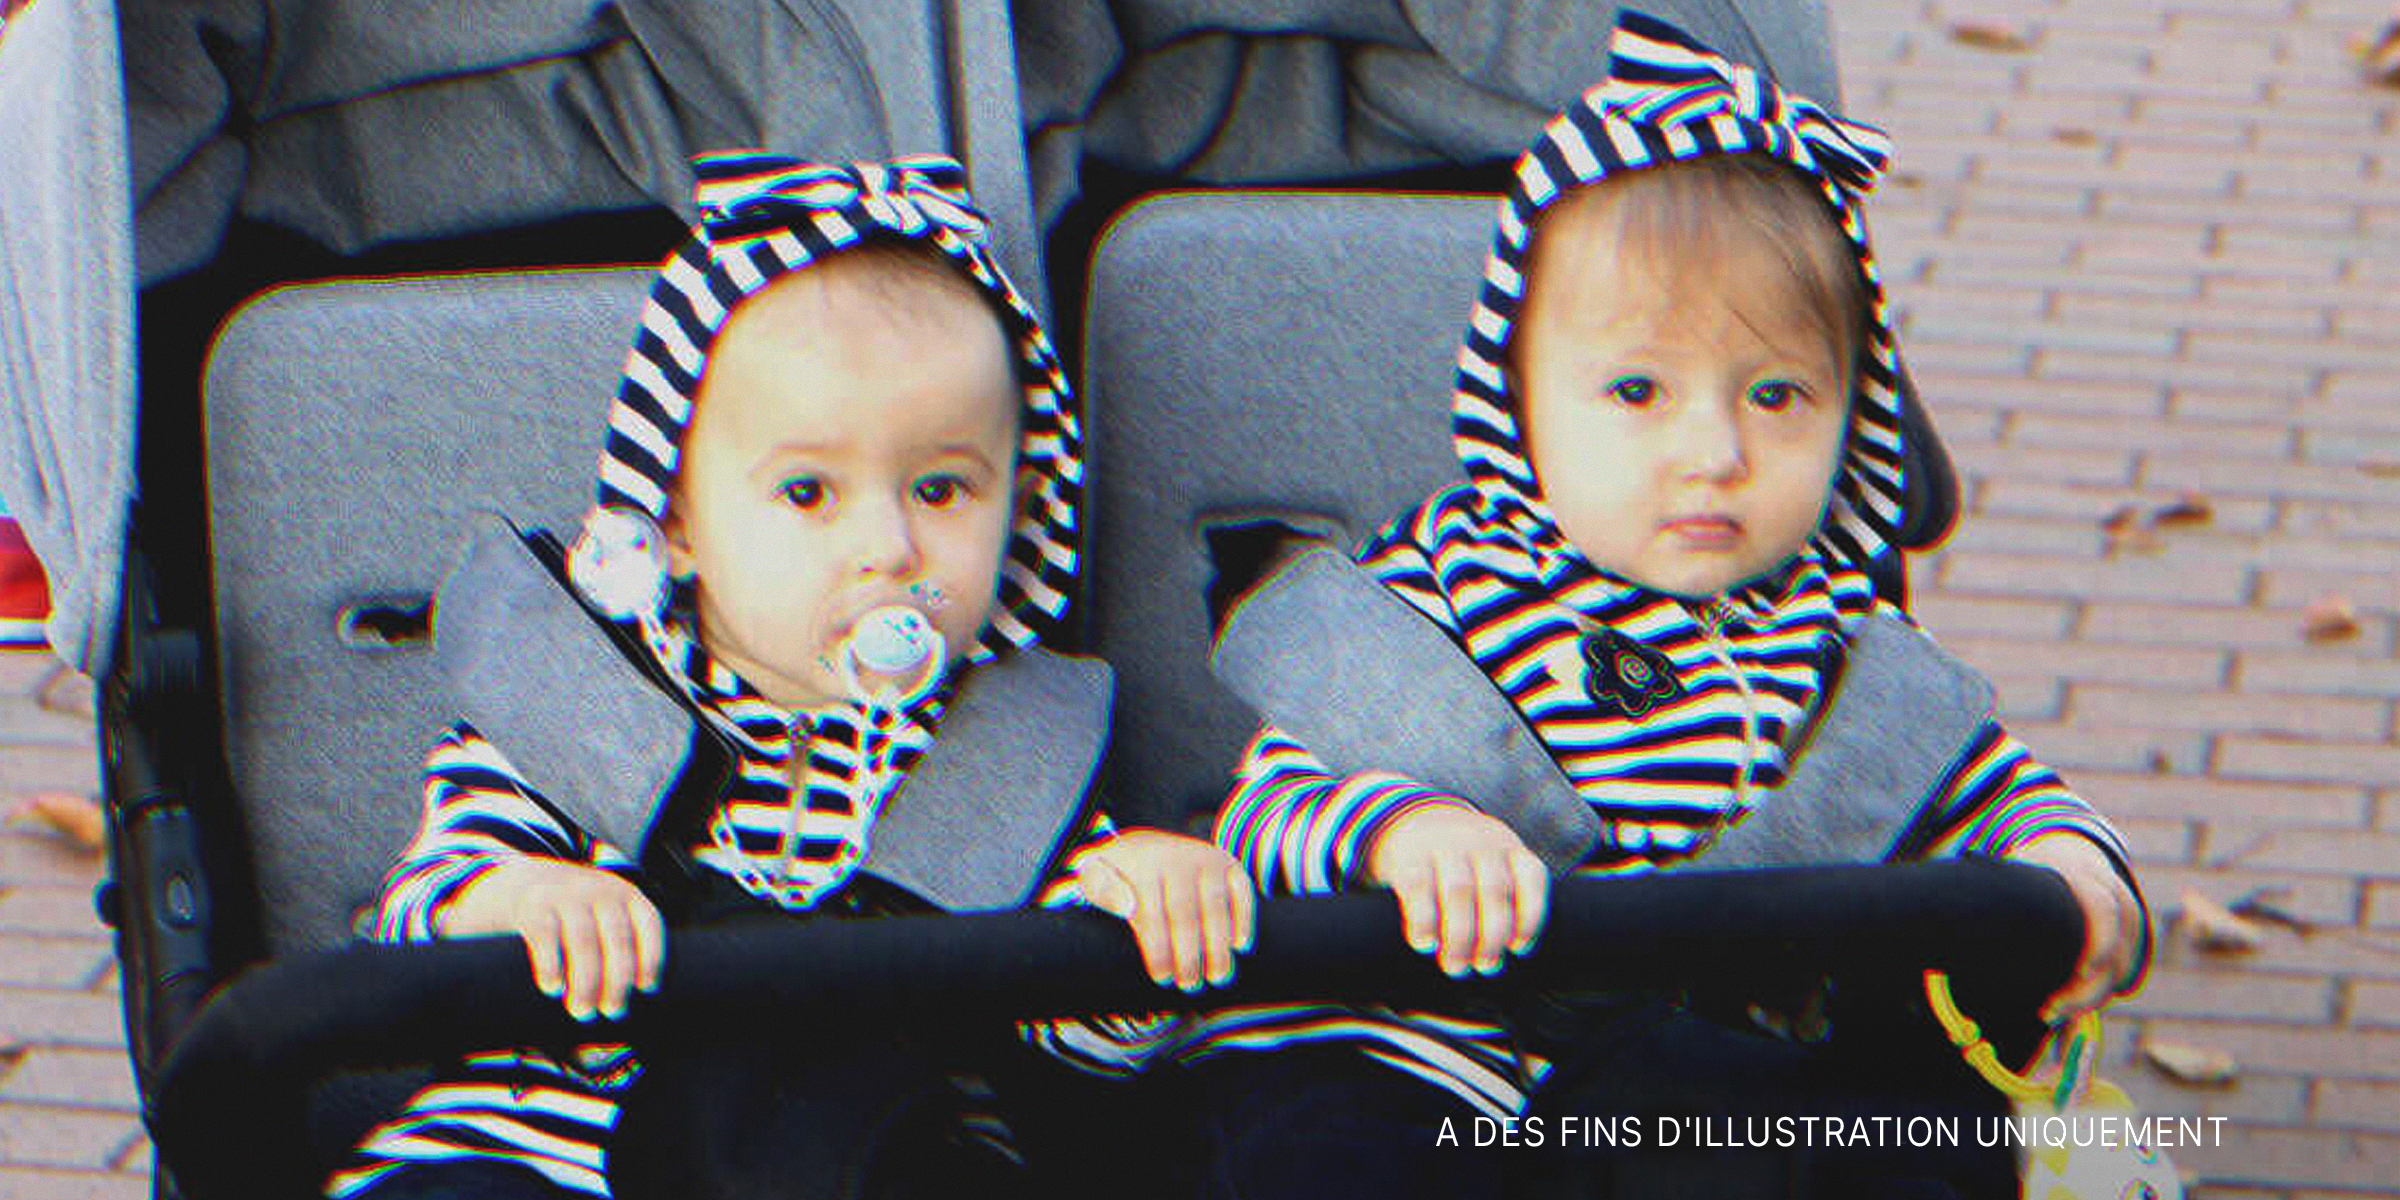 Une photo de jumeaux dans une poussette | Source : Shutterstock